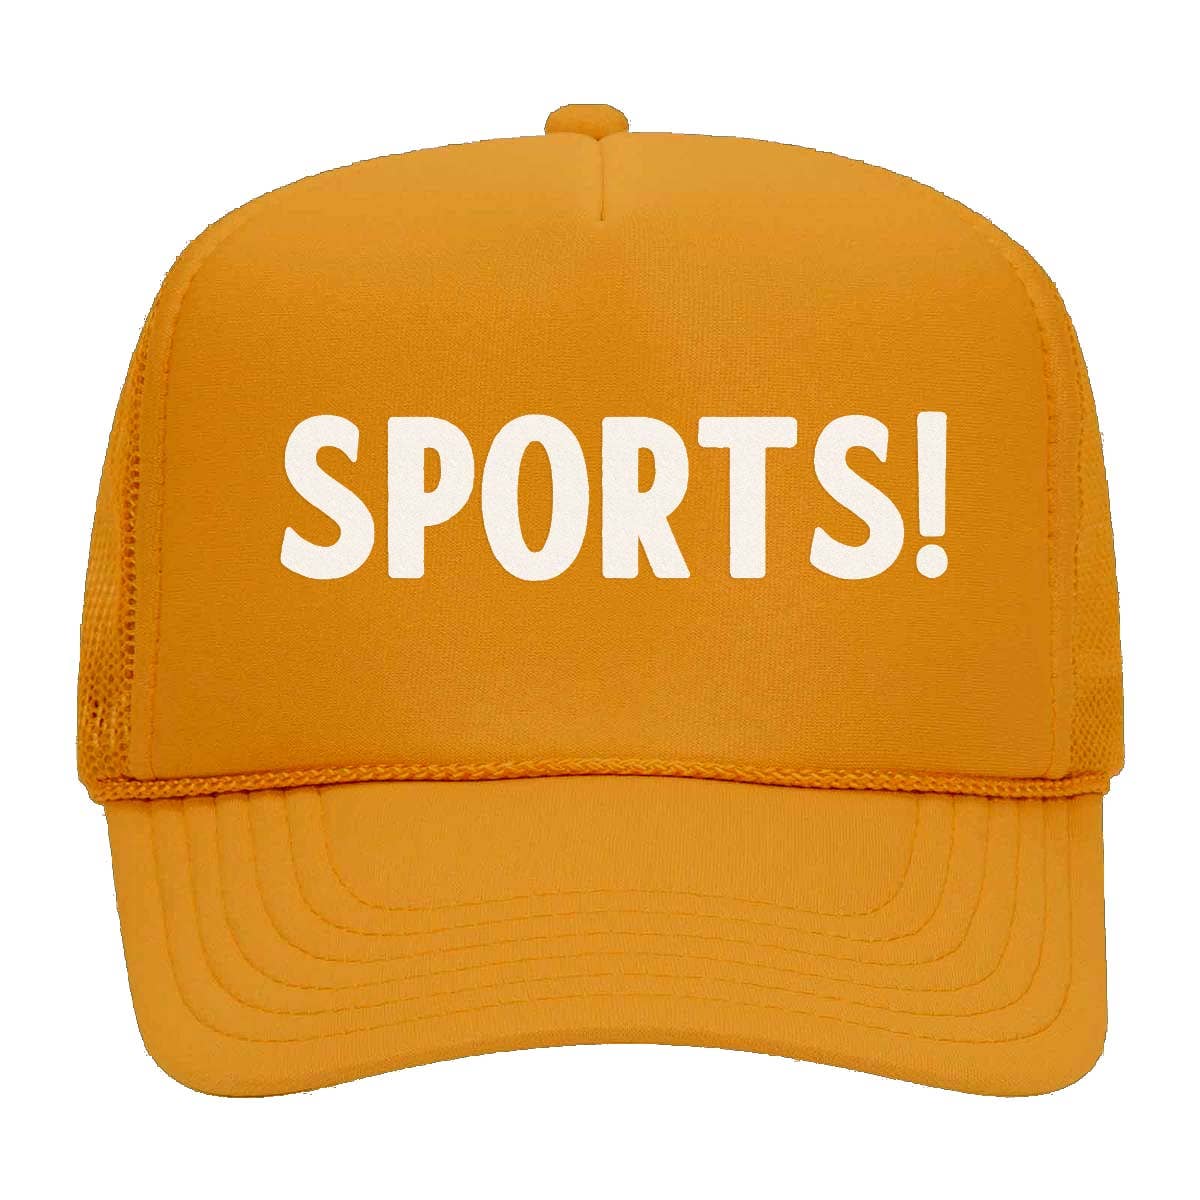 Sports! Foam Snapback Hat